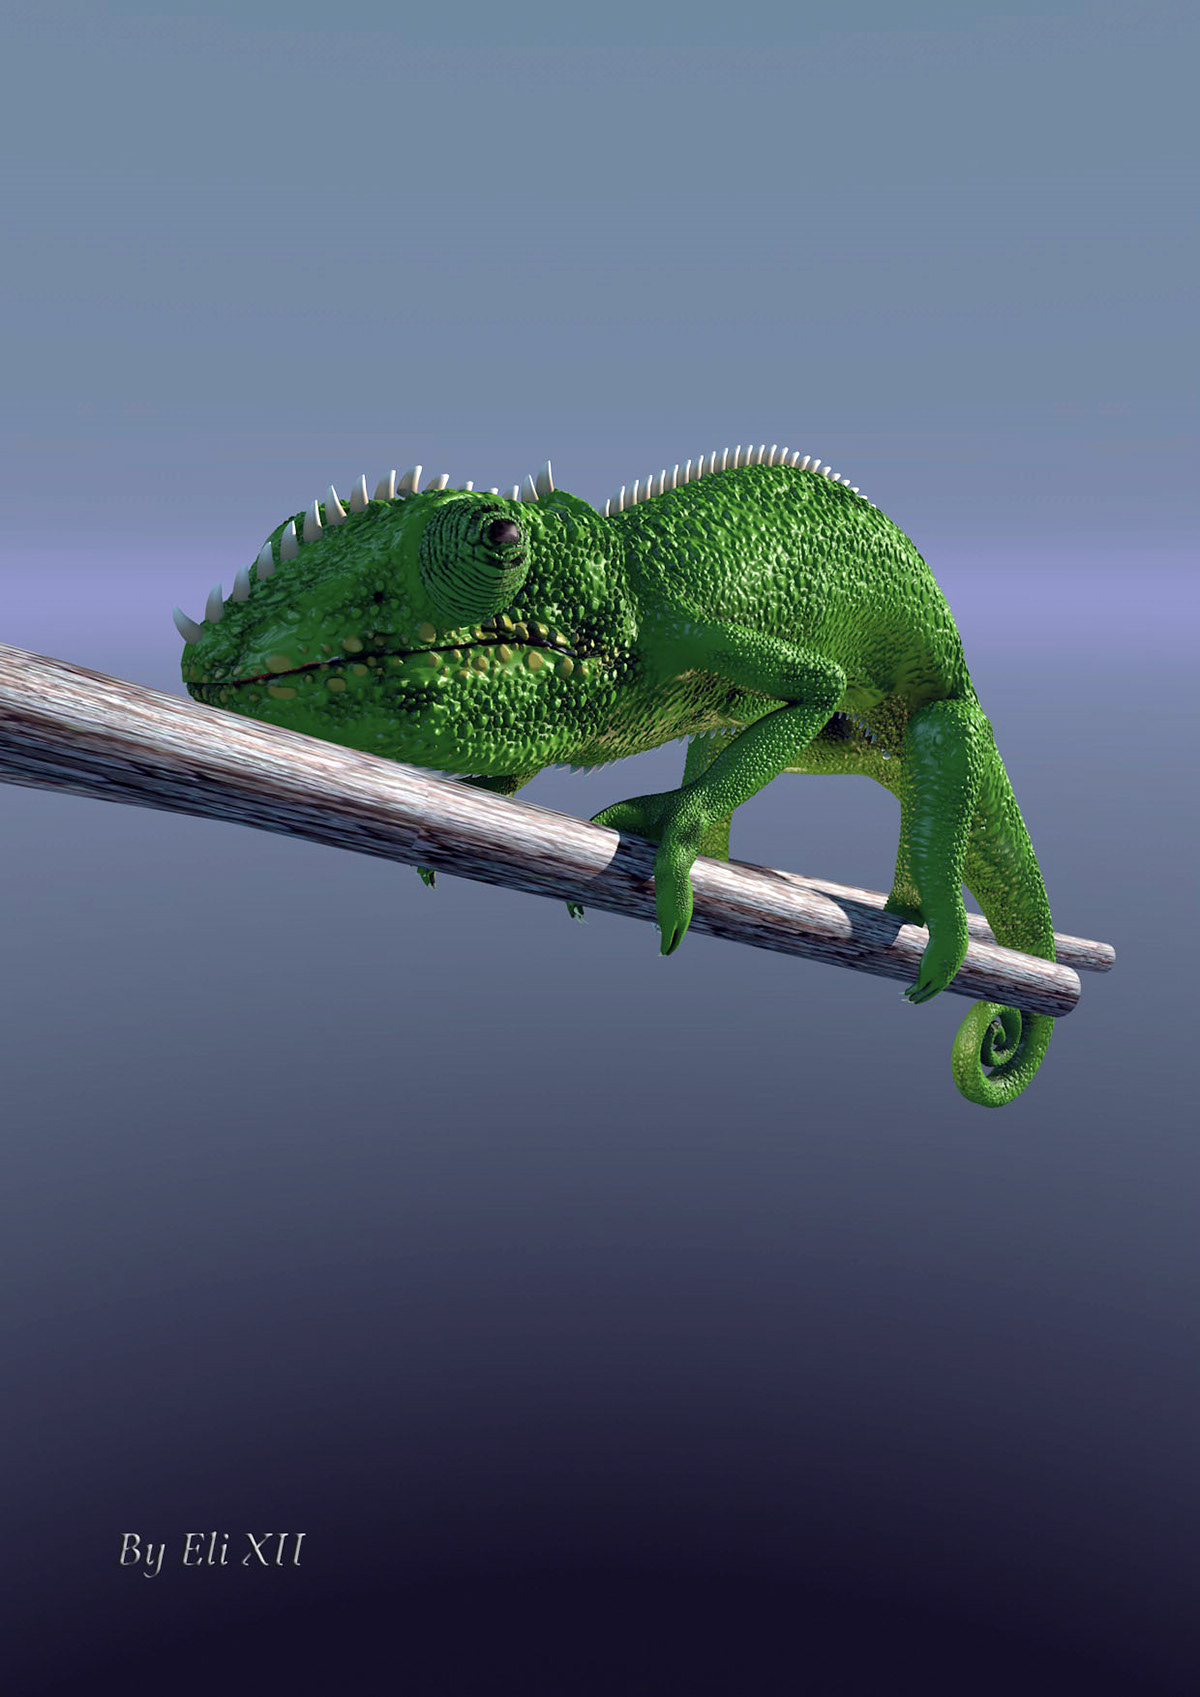 chameleon ant cinema 4d lunch 3D CGI cameleon